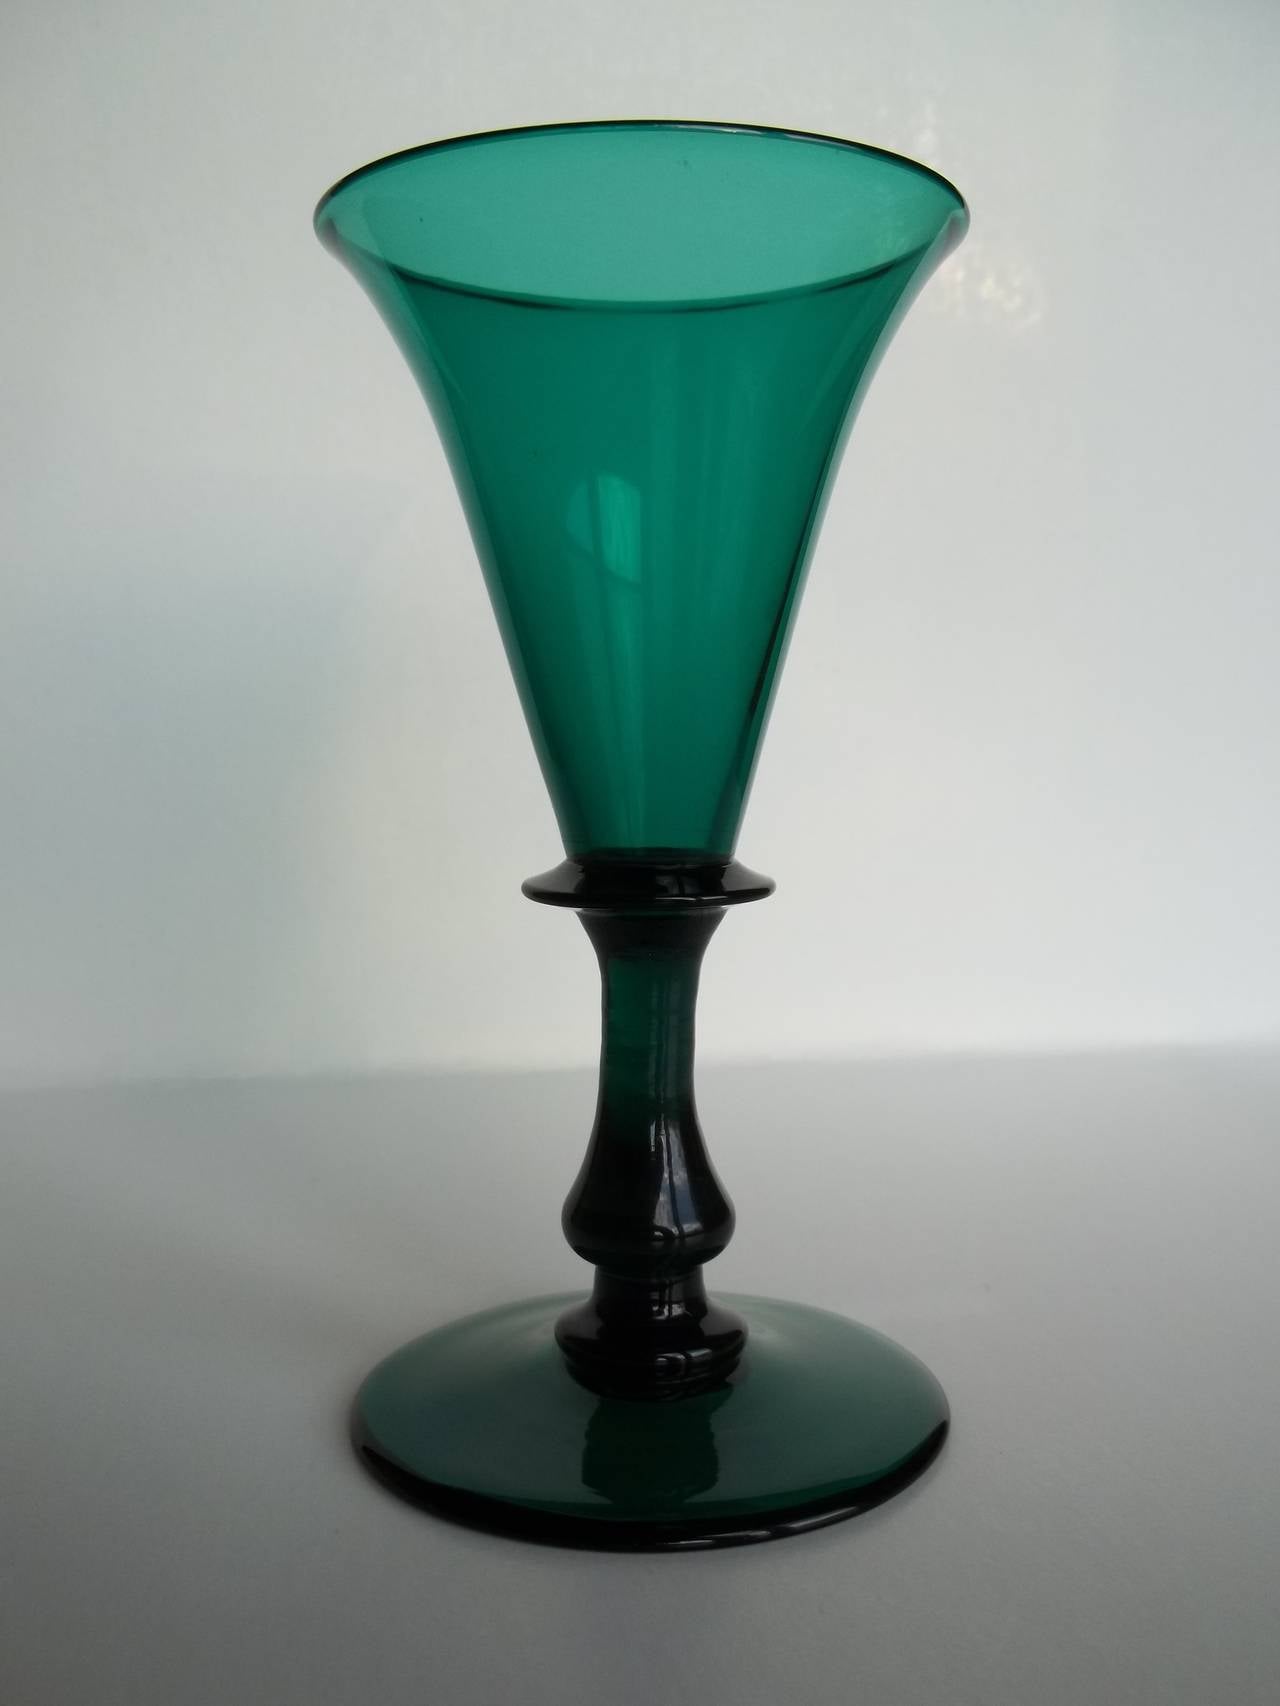 Dies ist ein hervorragendes Beispiel für ein englisches, mundgeblasenes, grünes Weintrinkglas aus Bristol aus dem frühen 19. Jahrhundert, das wir auf die George 111 Regency-Periode, etwa 1815, datieren.

Dieses Glas hat eine elegante